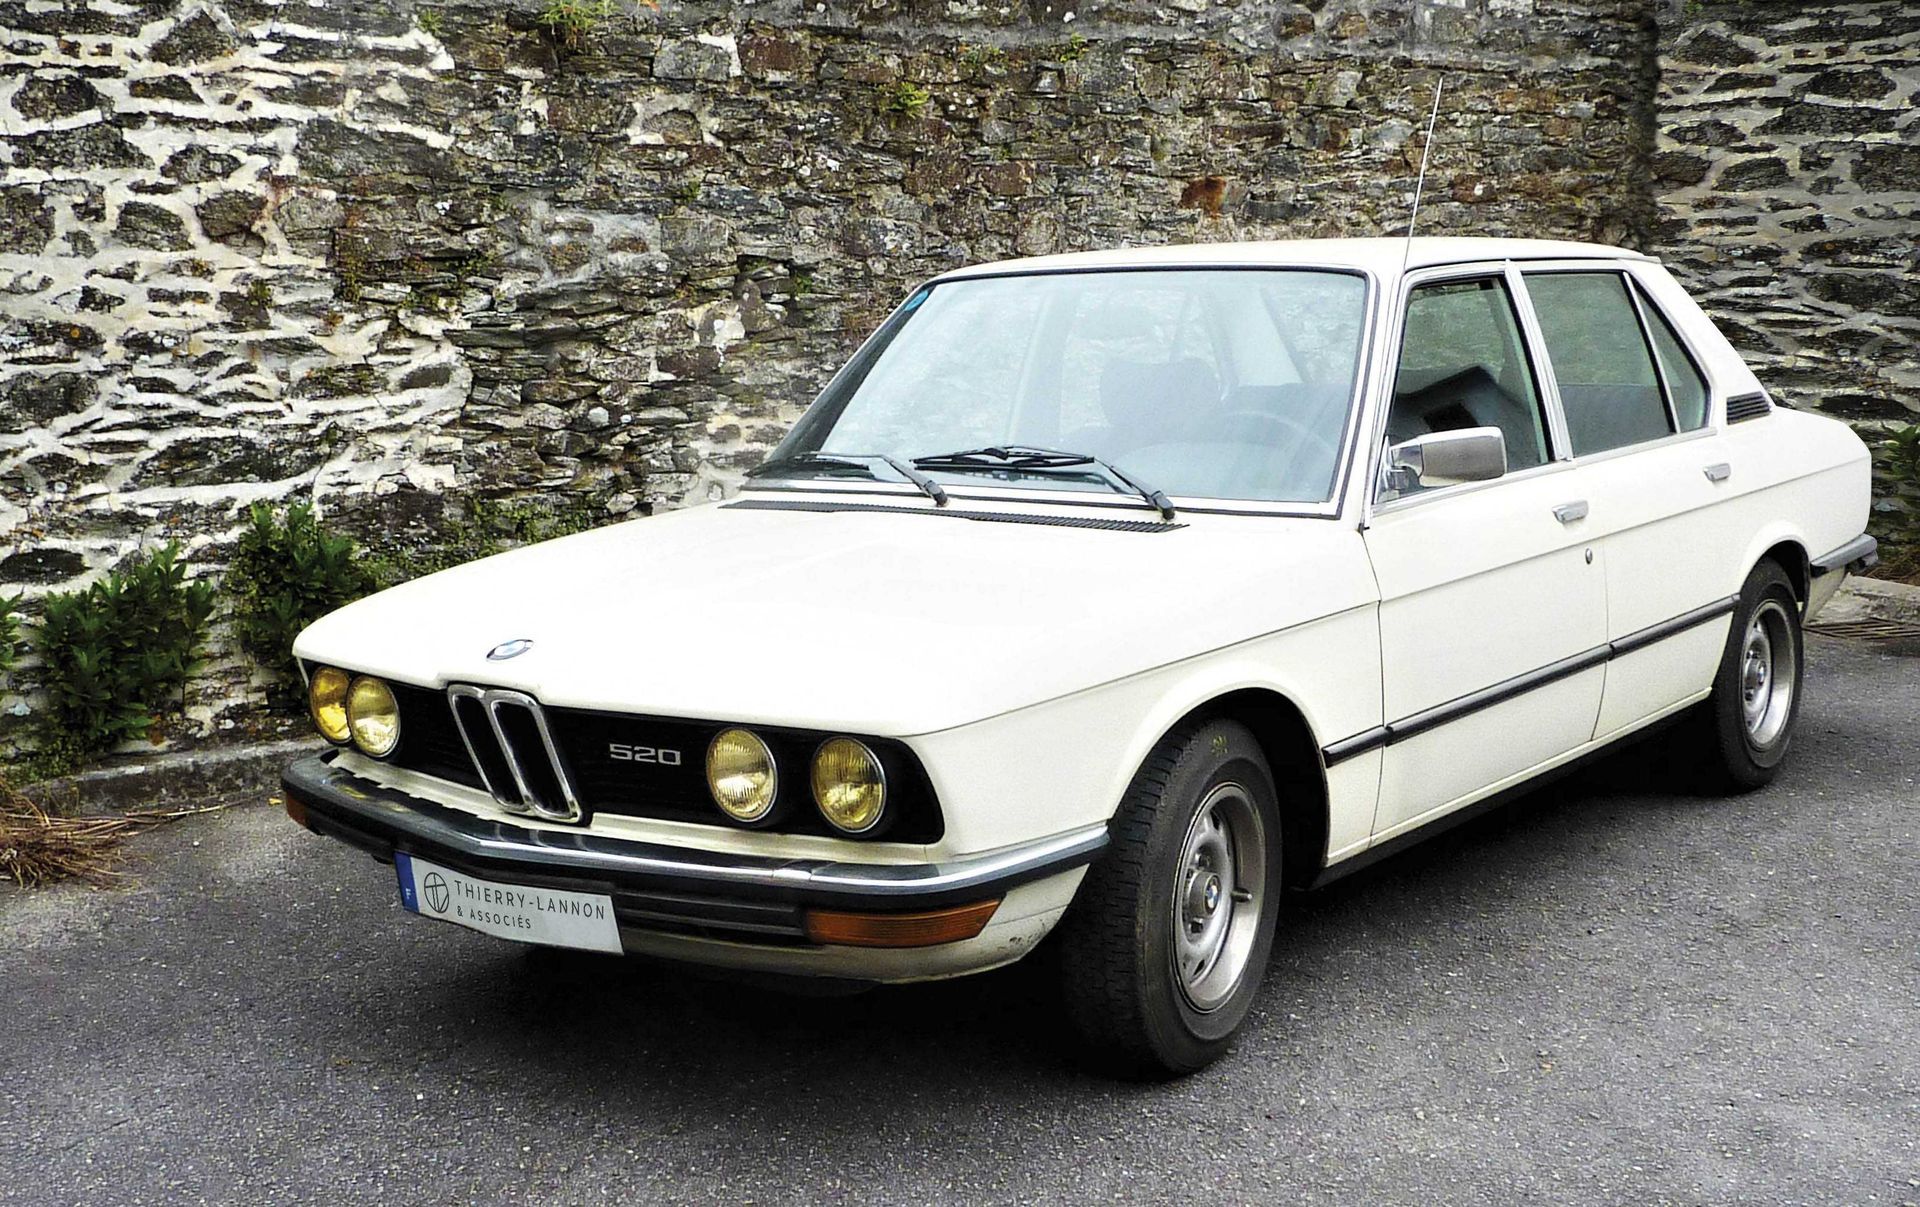 Null 
BMW 520/6 (E12)-从1978年3月9日起-序列号：6 806 522 - ES 11 CV - Type 520/6 - 正常登记

&hellip;